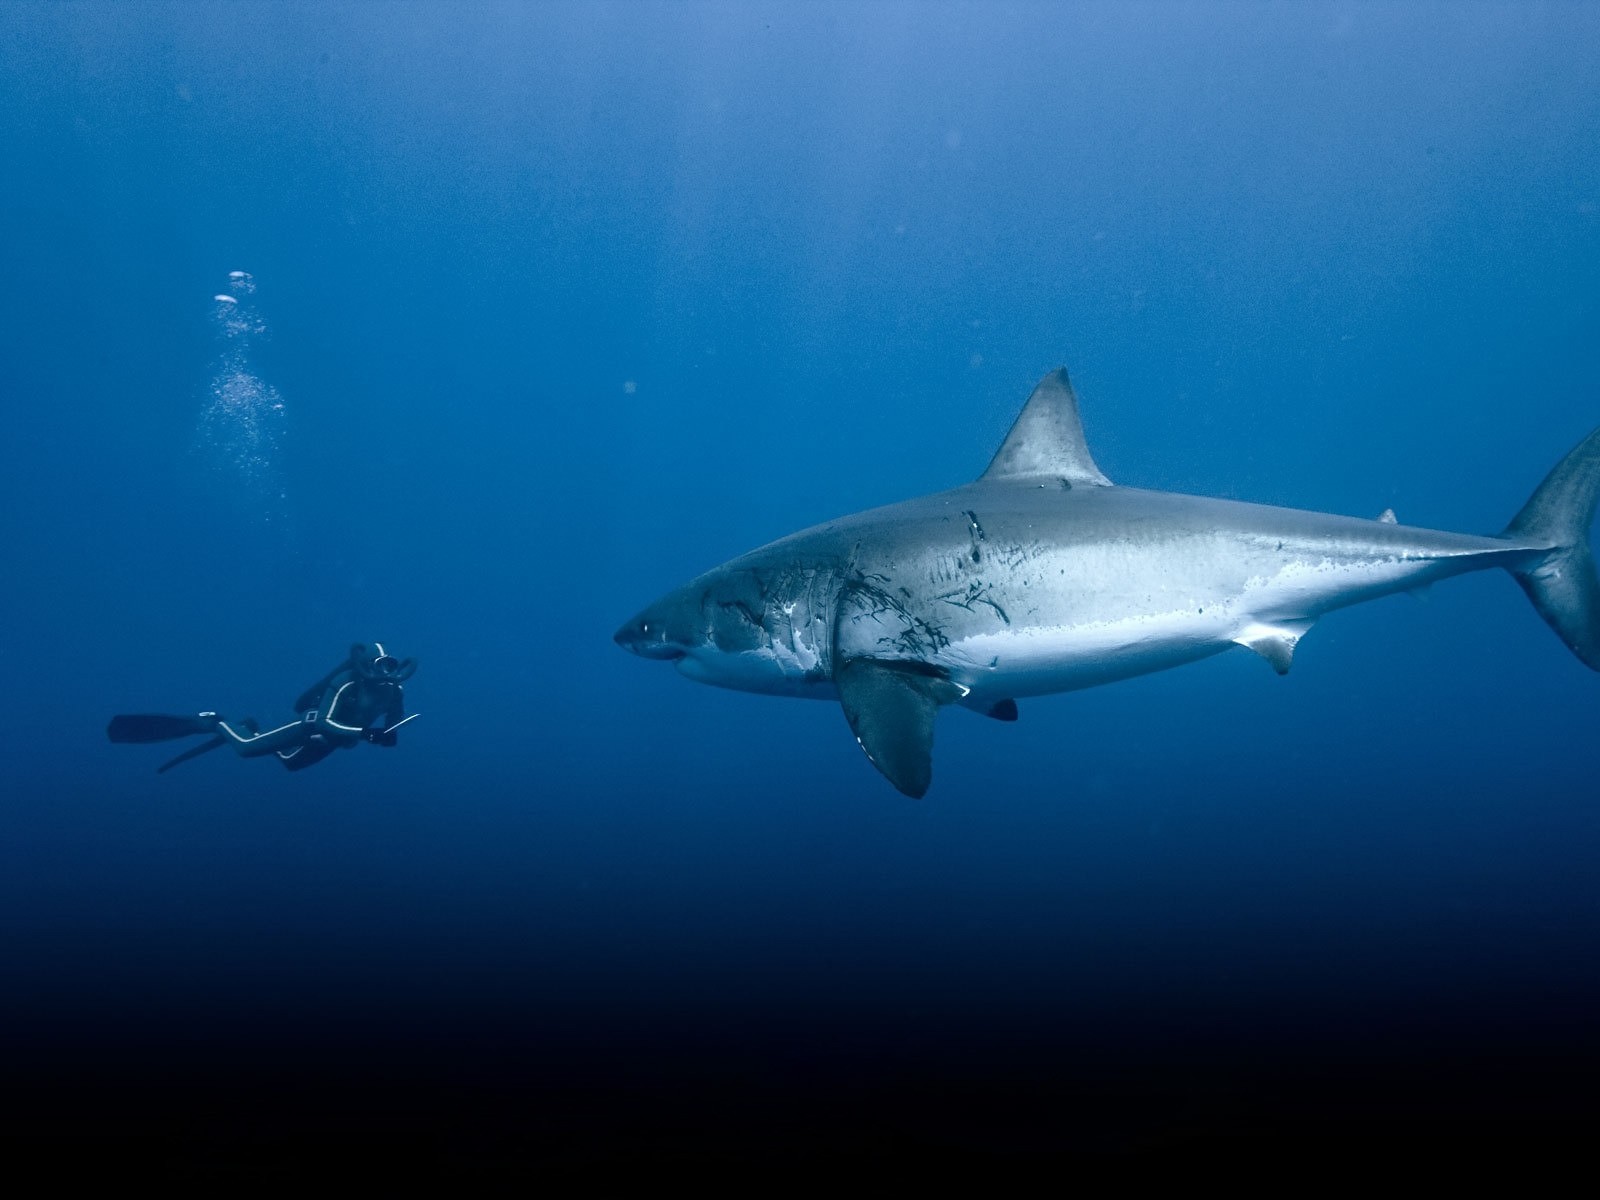 General 1600x1200 Great White Shark animals fish shark divers underwater